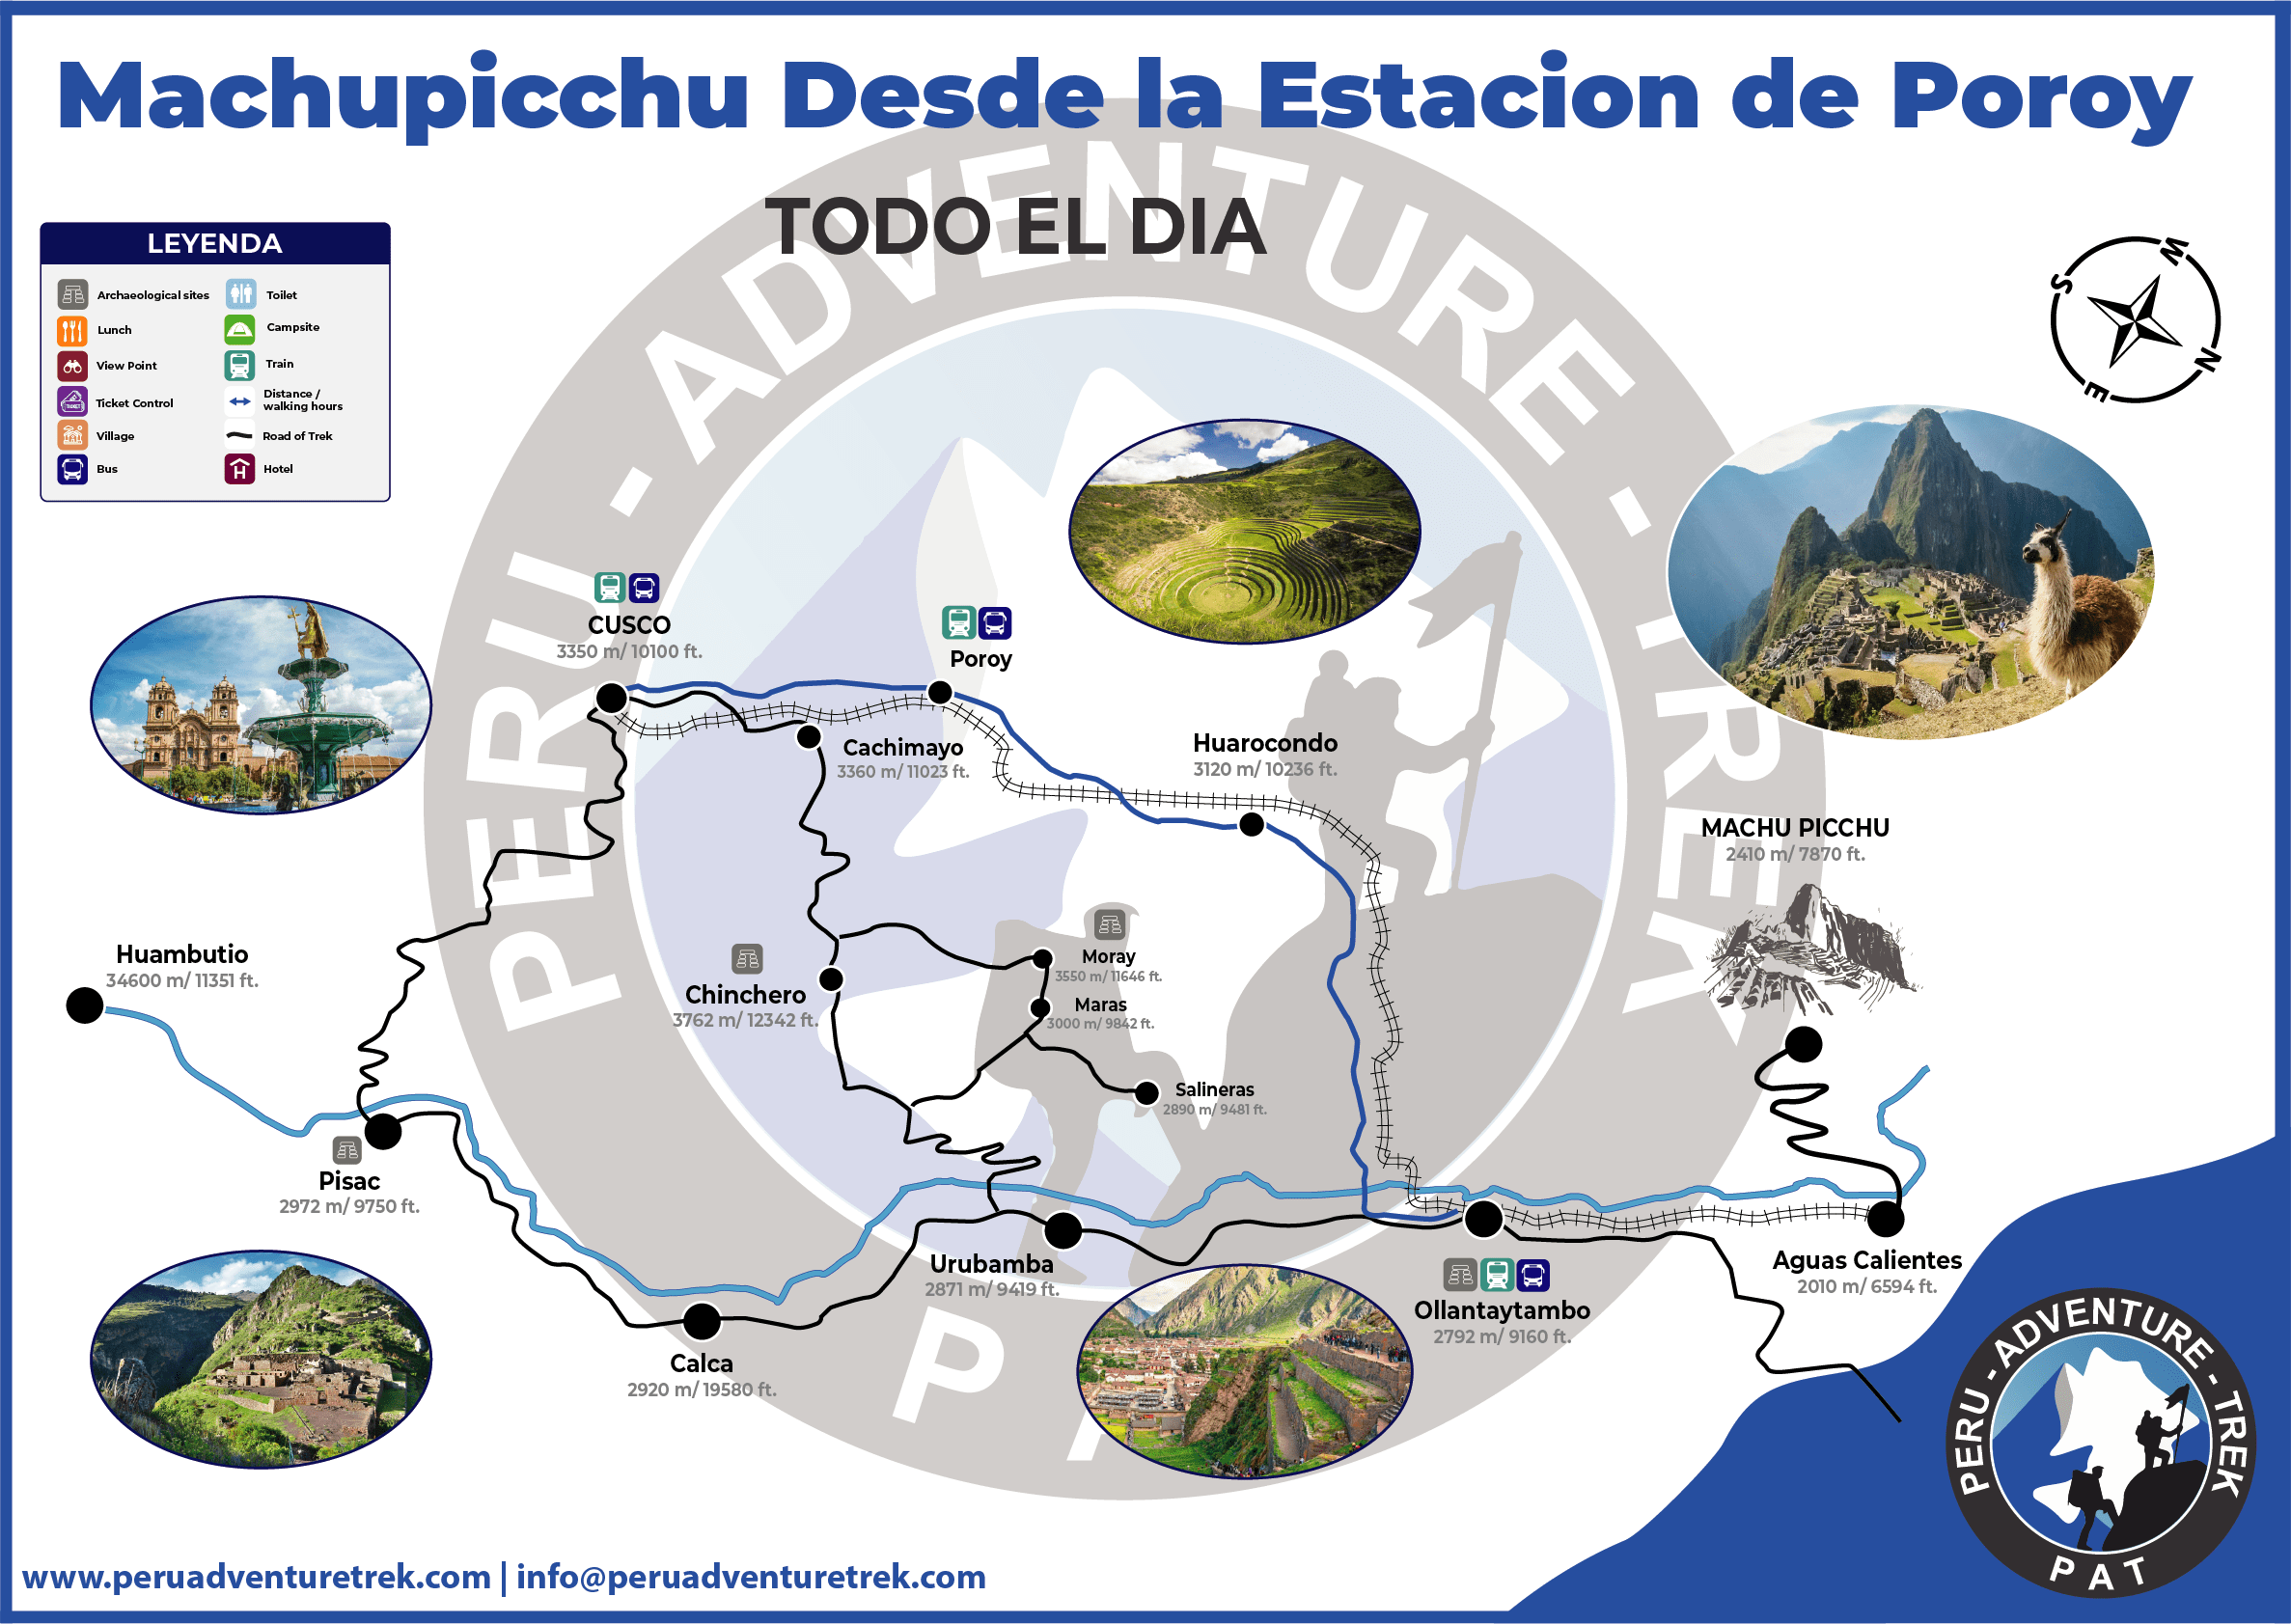  Machu Picchu Full day from Poroy Train Station - Mapa 